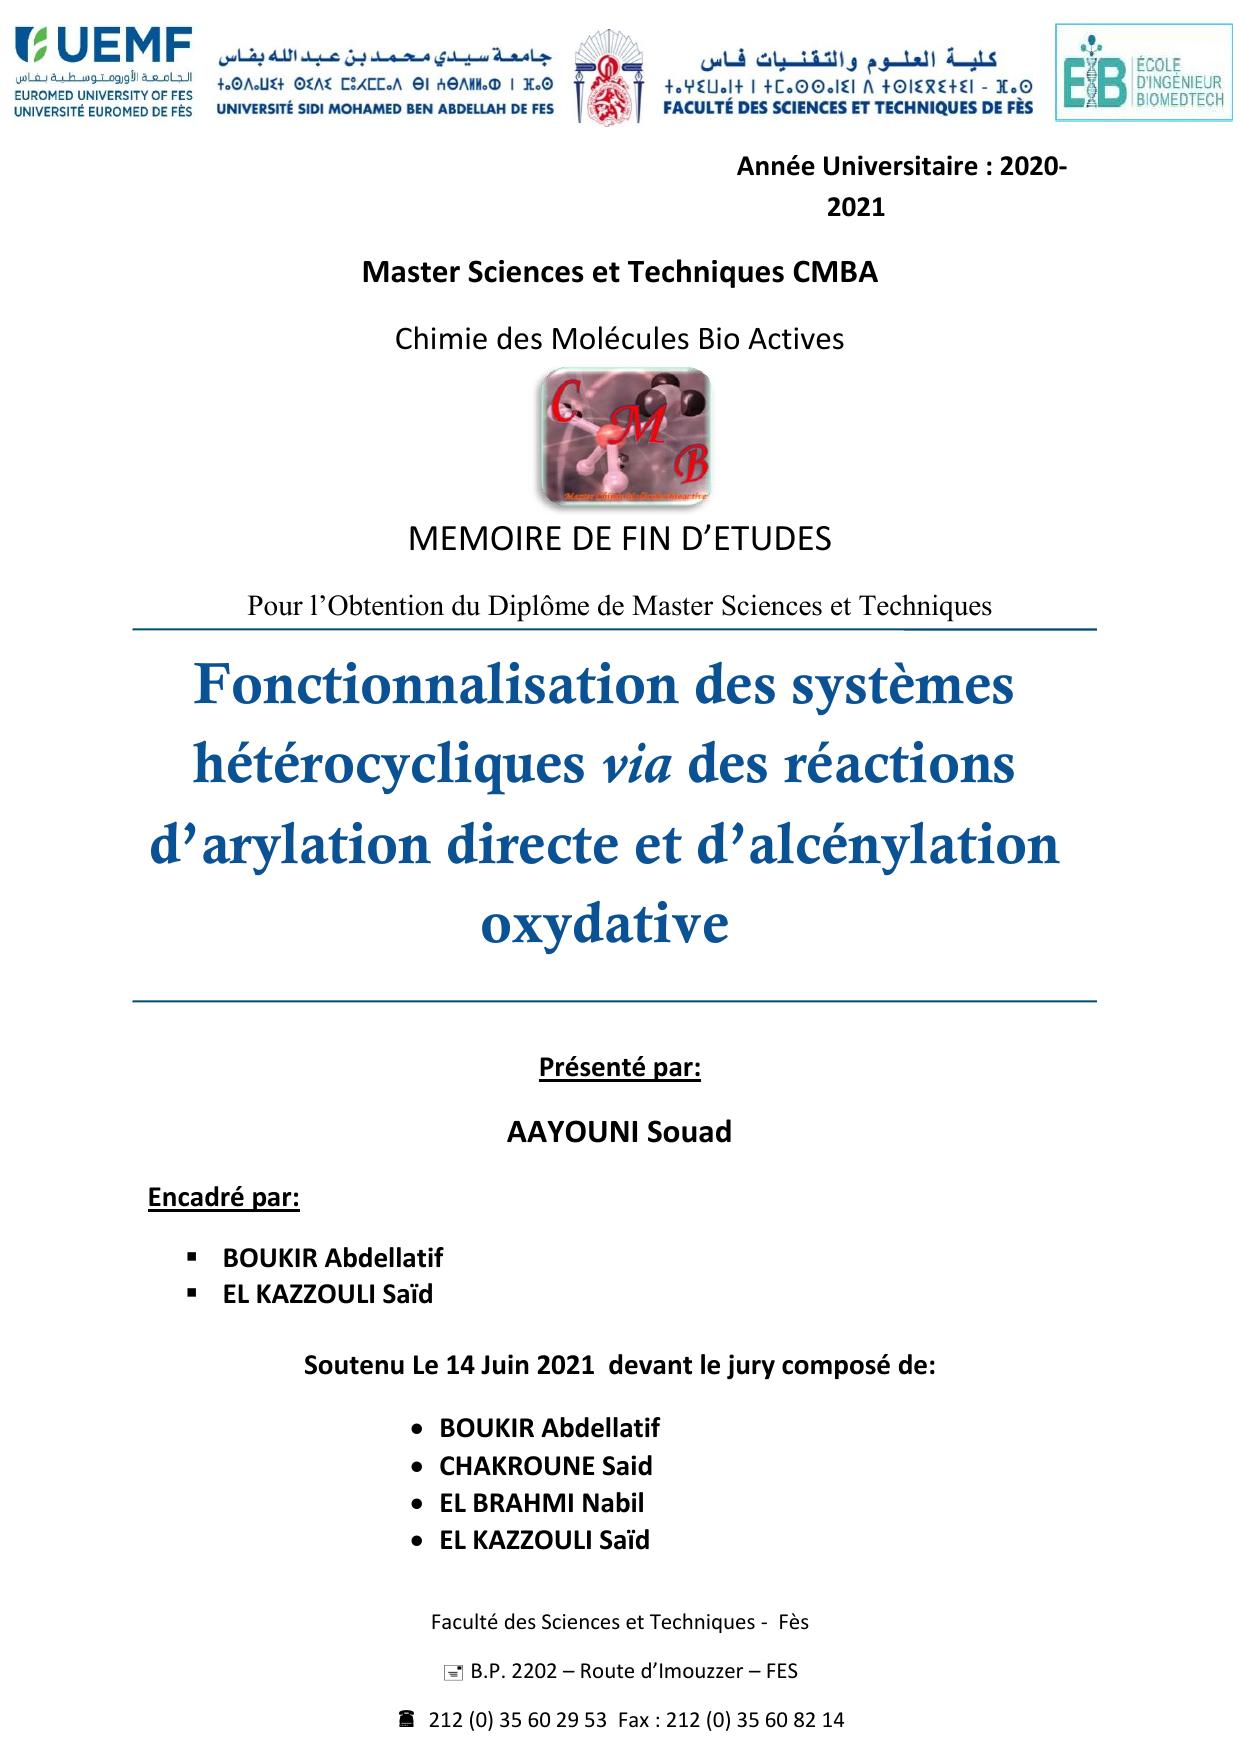 Fonctionnalisation des systèmes hétérocycliques via des réactions d’arylation directe et d’alcénylation oxydative